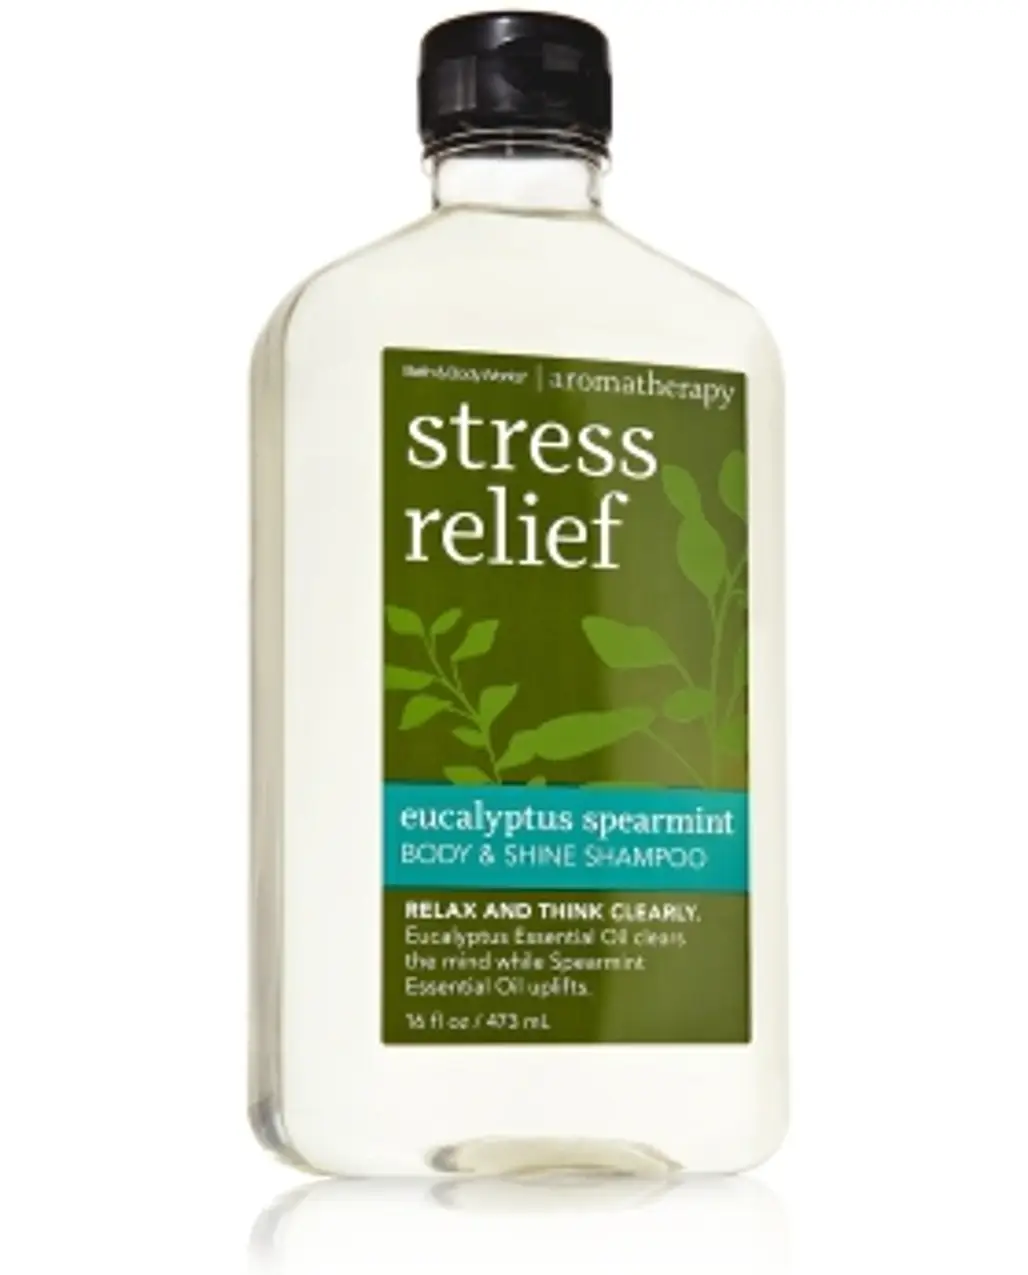 Bath & Body Works Aromatherapy Body & Shine Shampoo Stress Relief in Eucalyptus Spearmint